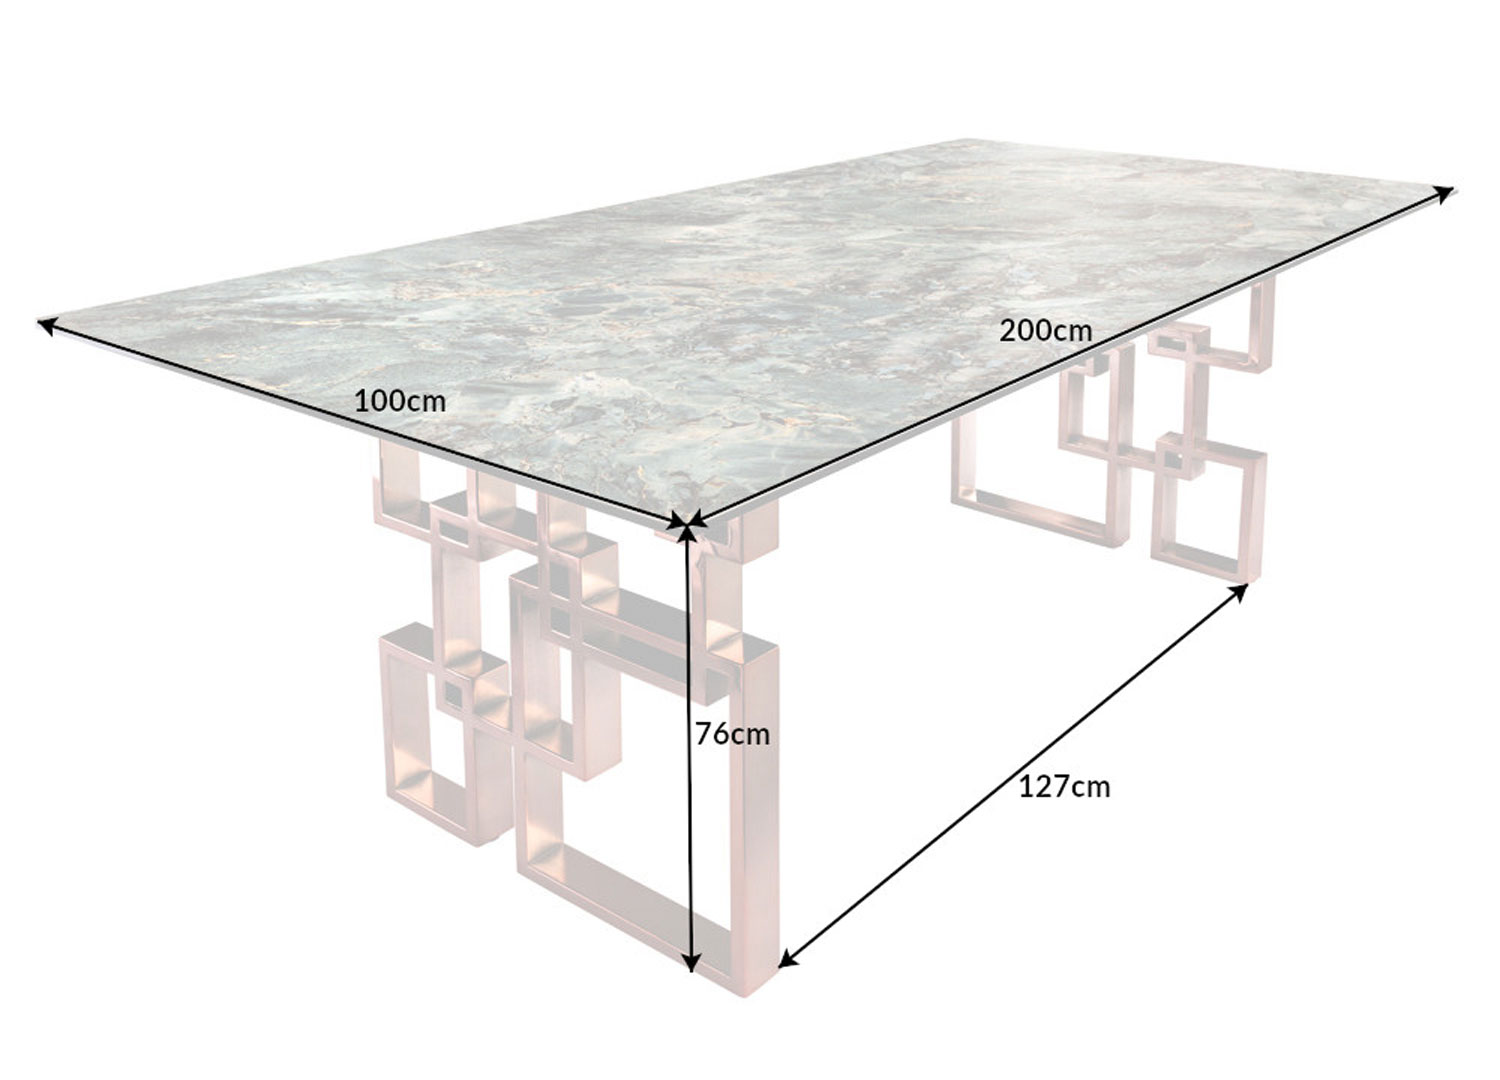 détails des dimensions de la table